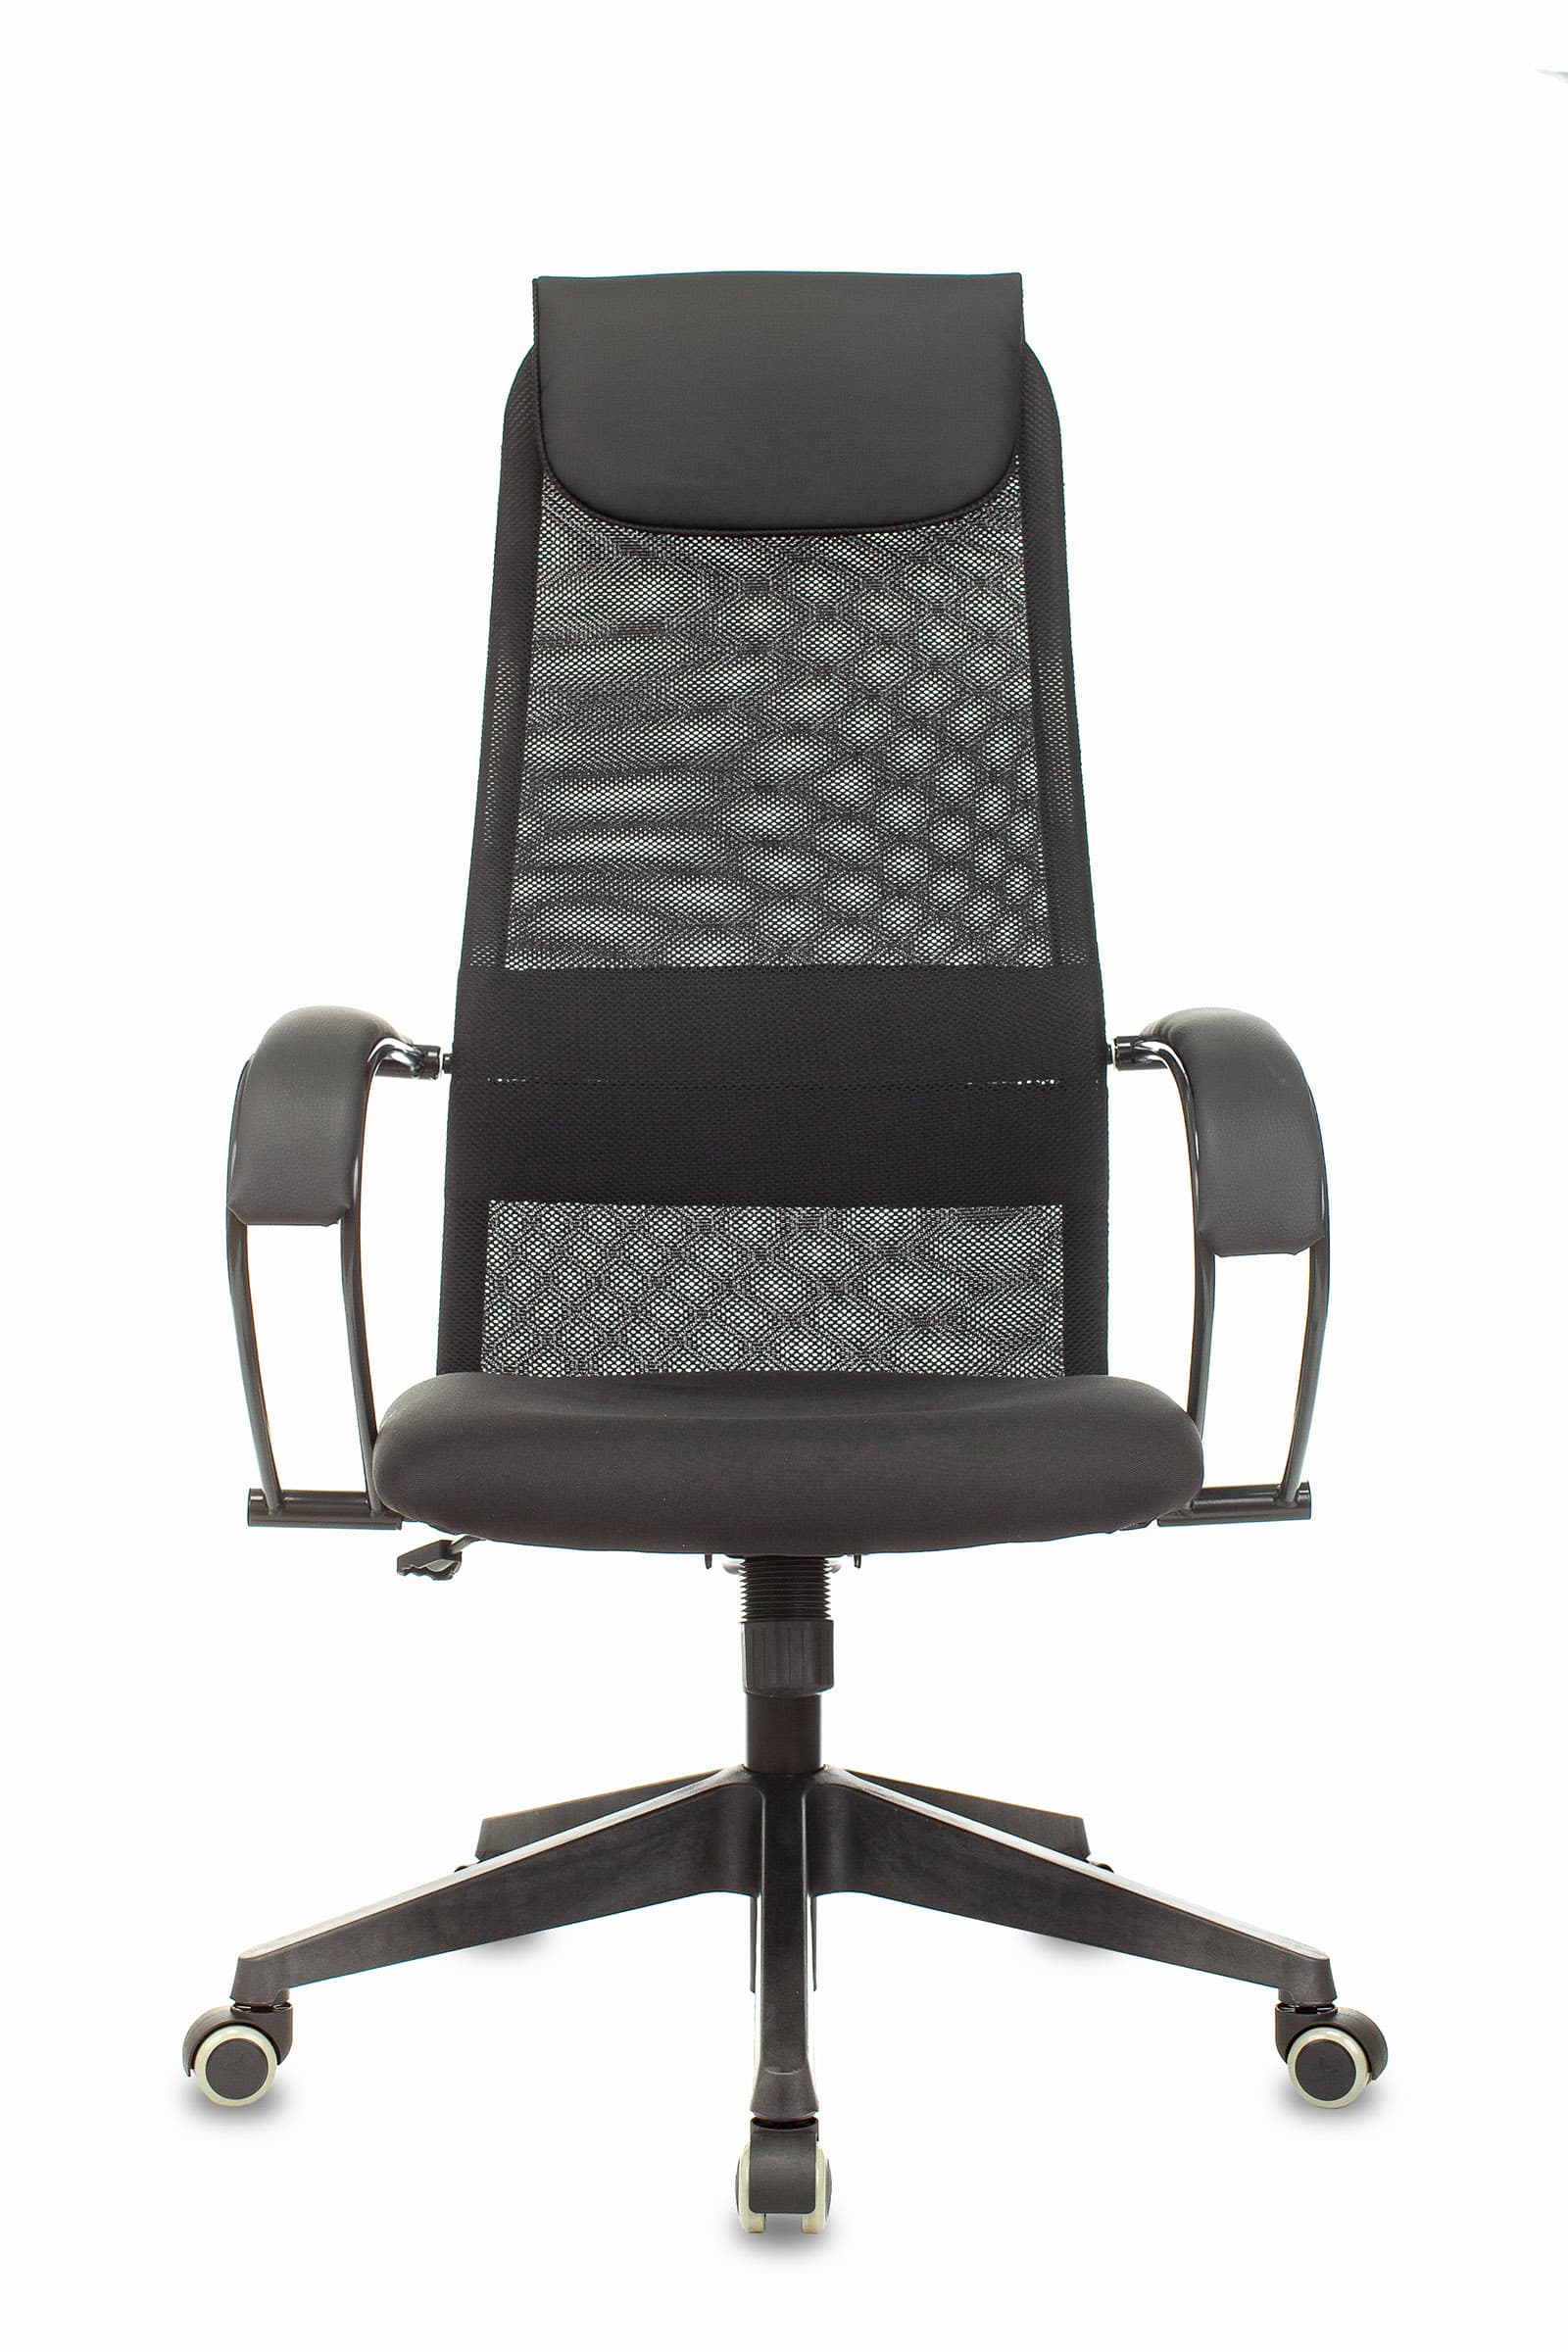 Кресло руководителя Бюрократ CH-607 черный TW-01 сетка/ткань с подголовником